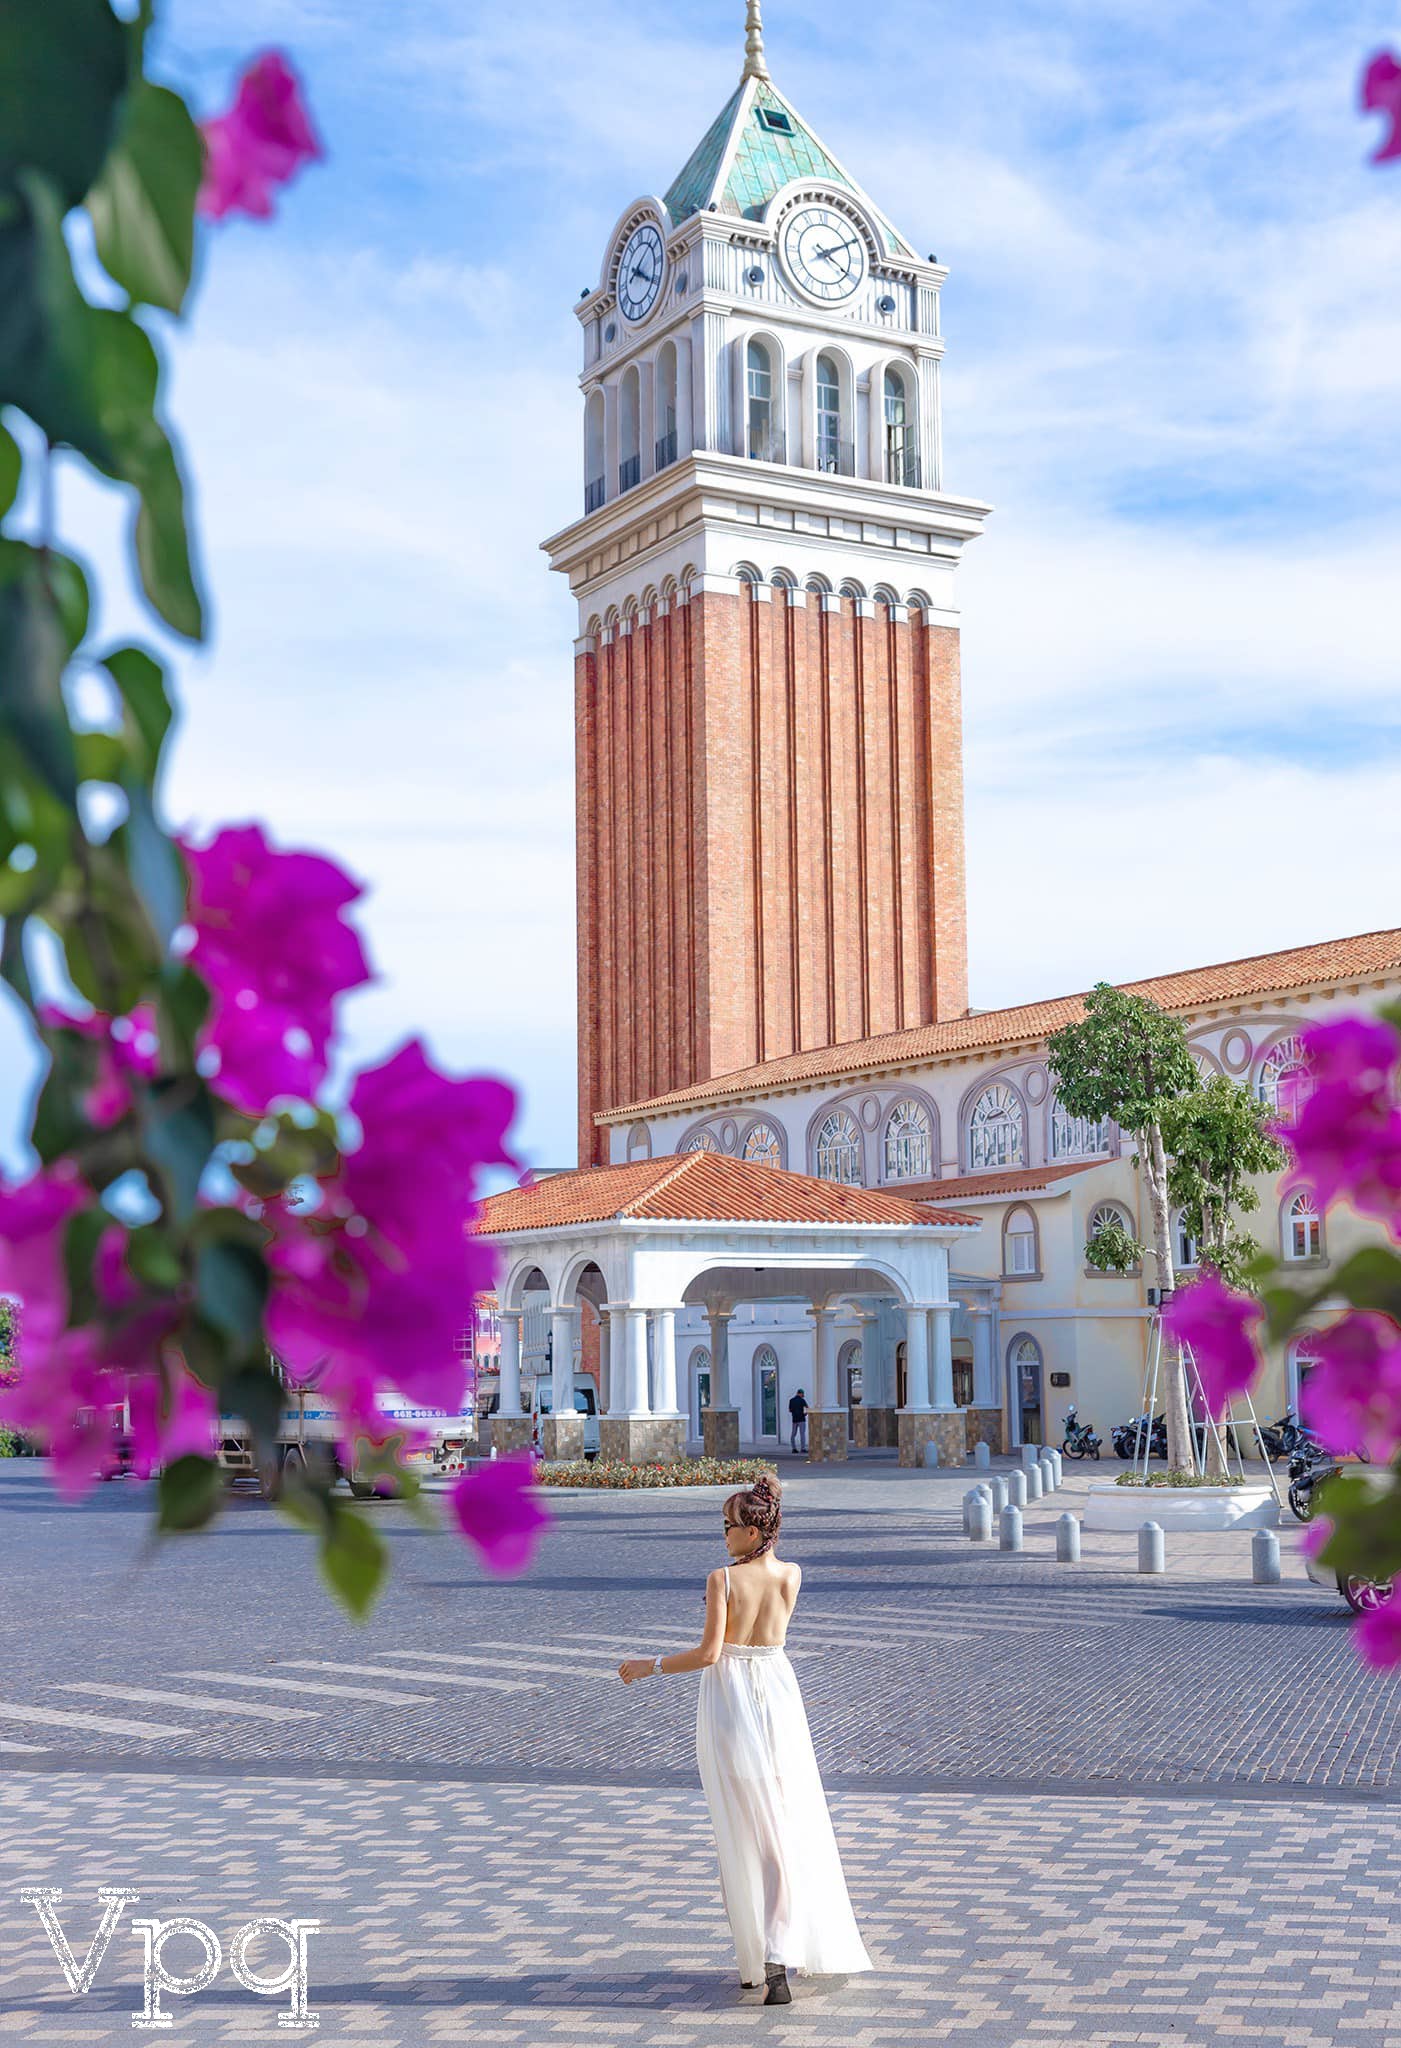 Tháp đồng hồ Venice